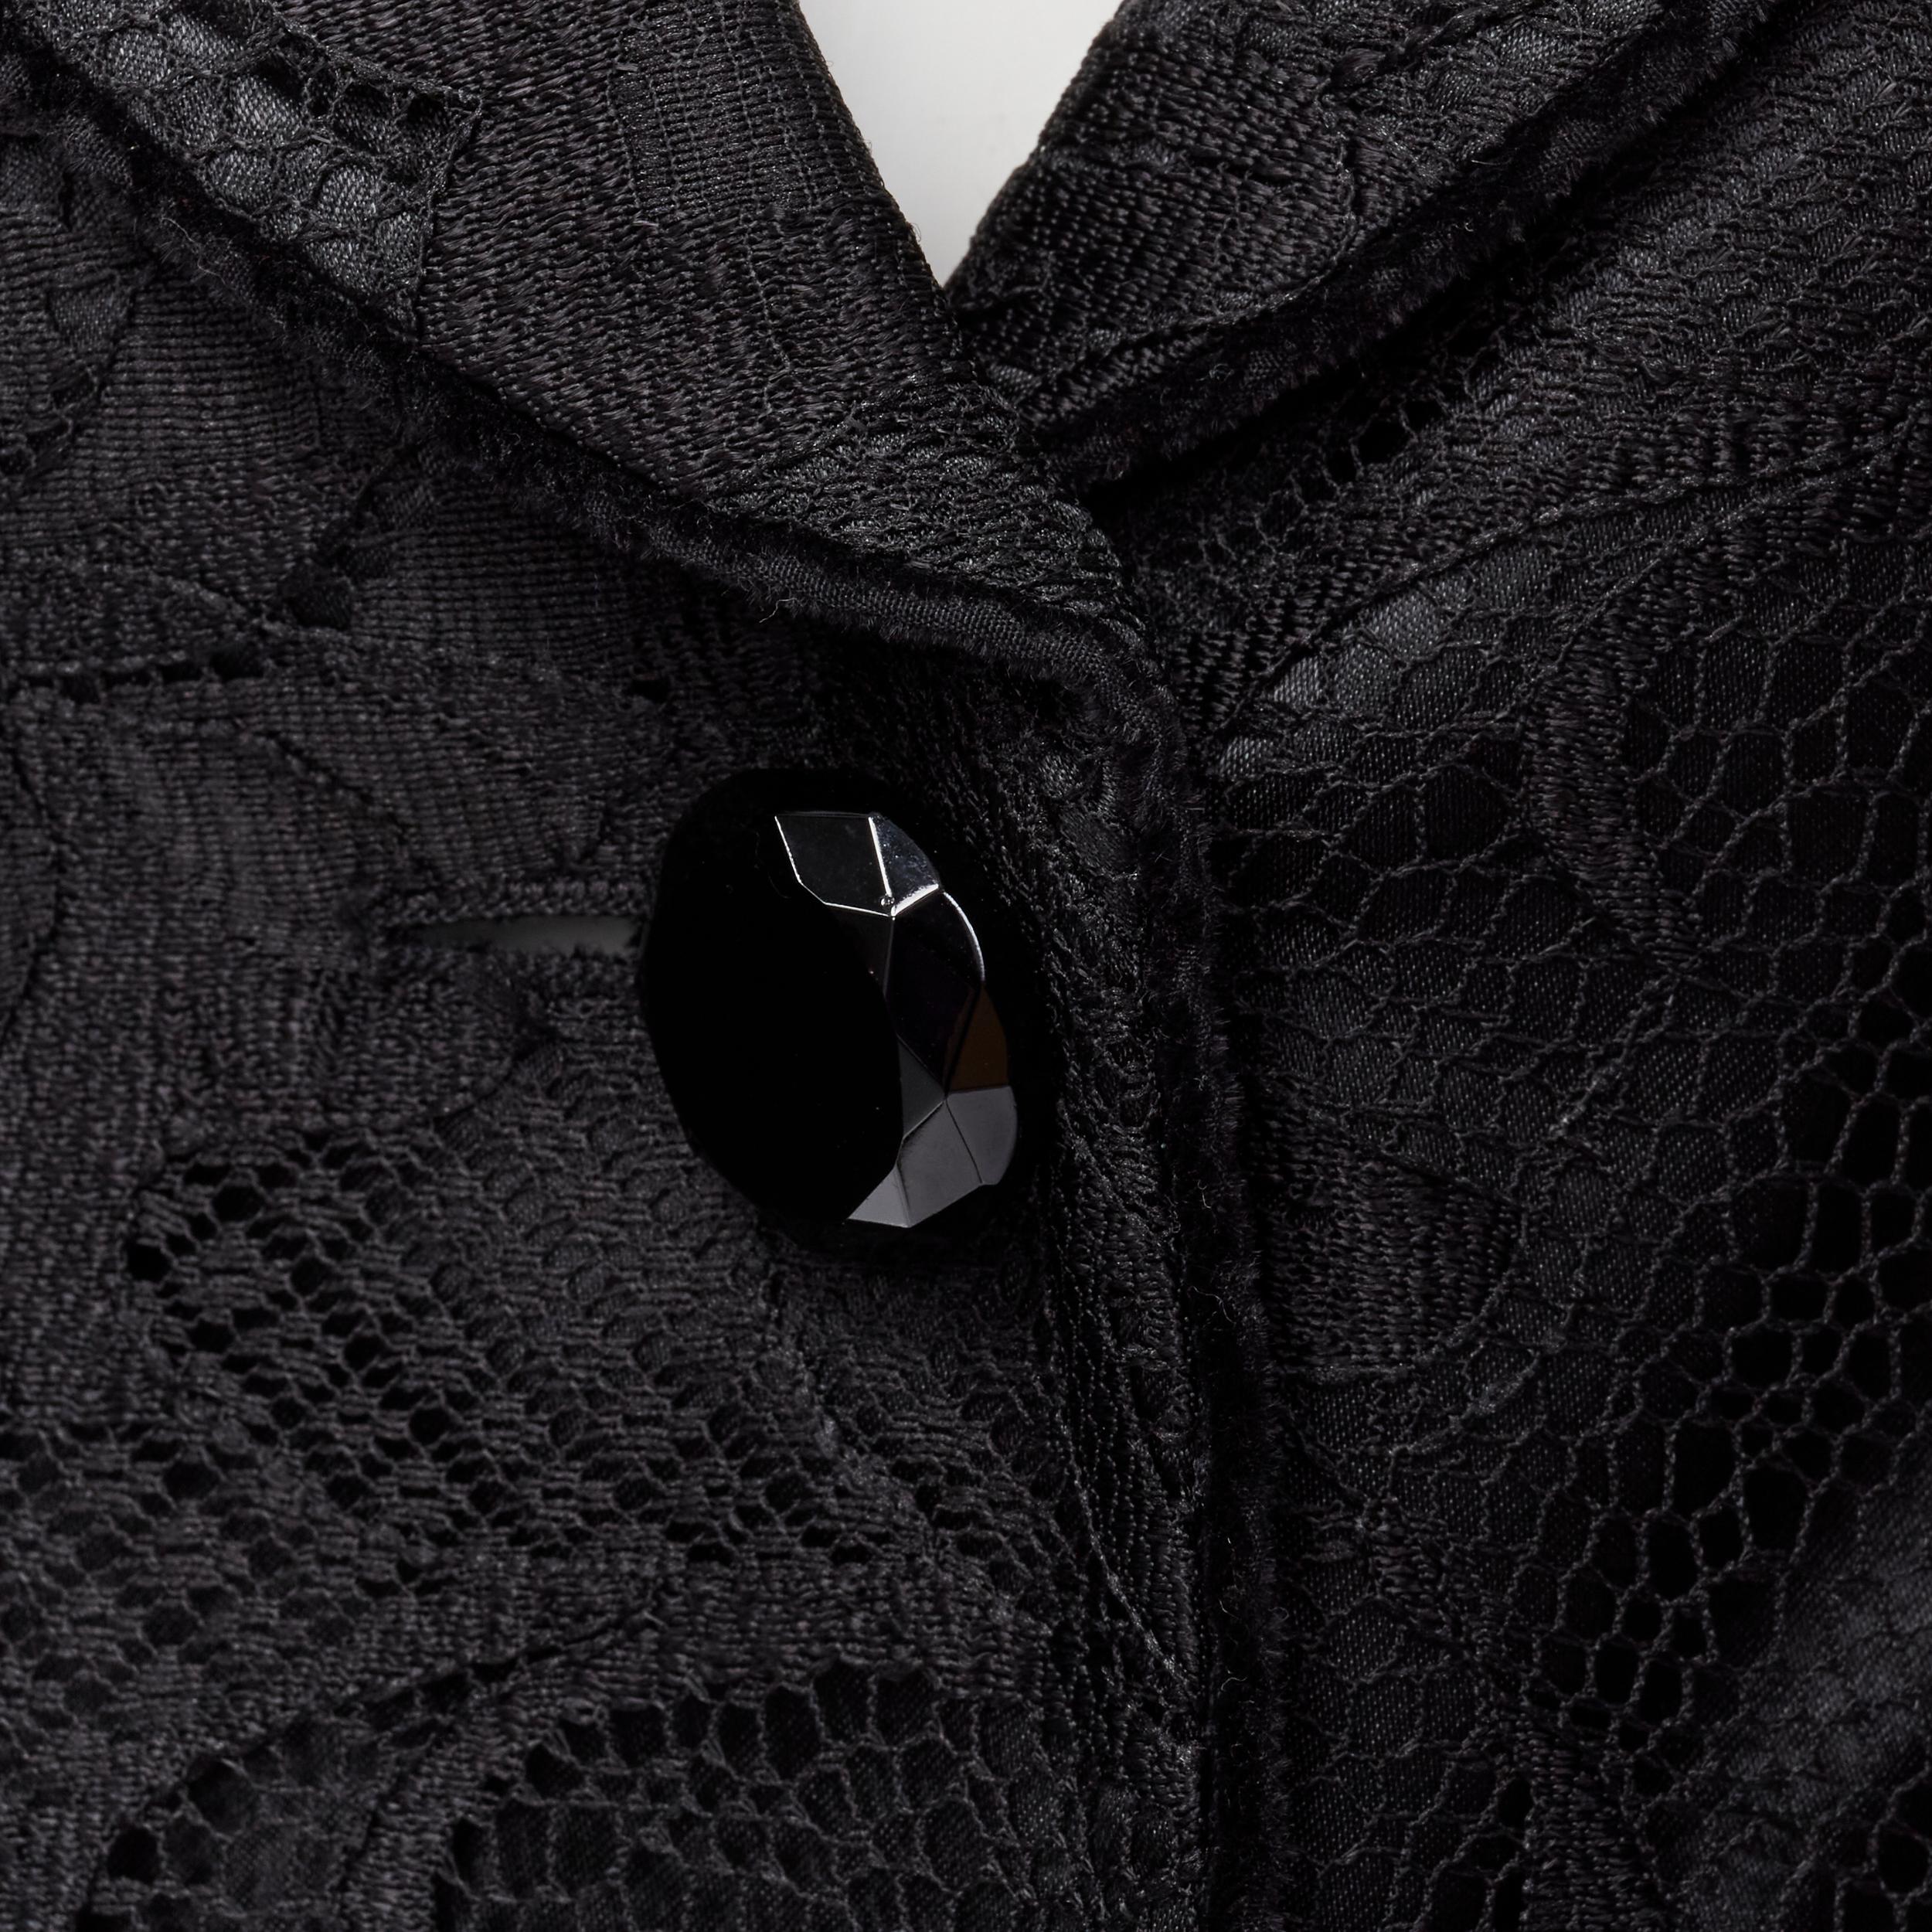 EMPORIO ARMANI - Blazer en dentelle noire avec boutons coupés en bijoux, taille IT 40 S 
Référence : MAWG/A00069 
Marque : Emporio Armani 
Matériau : Polyester 
Couleur : Noir 
Motif : Solide 
Fermeture : bouton 
Détail supplémentaire :